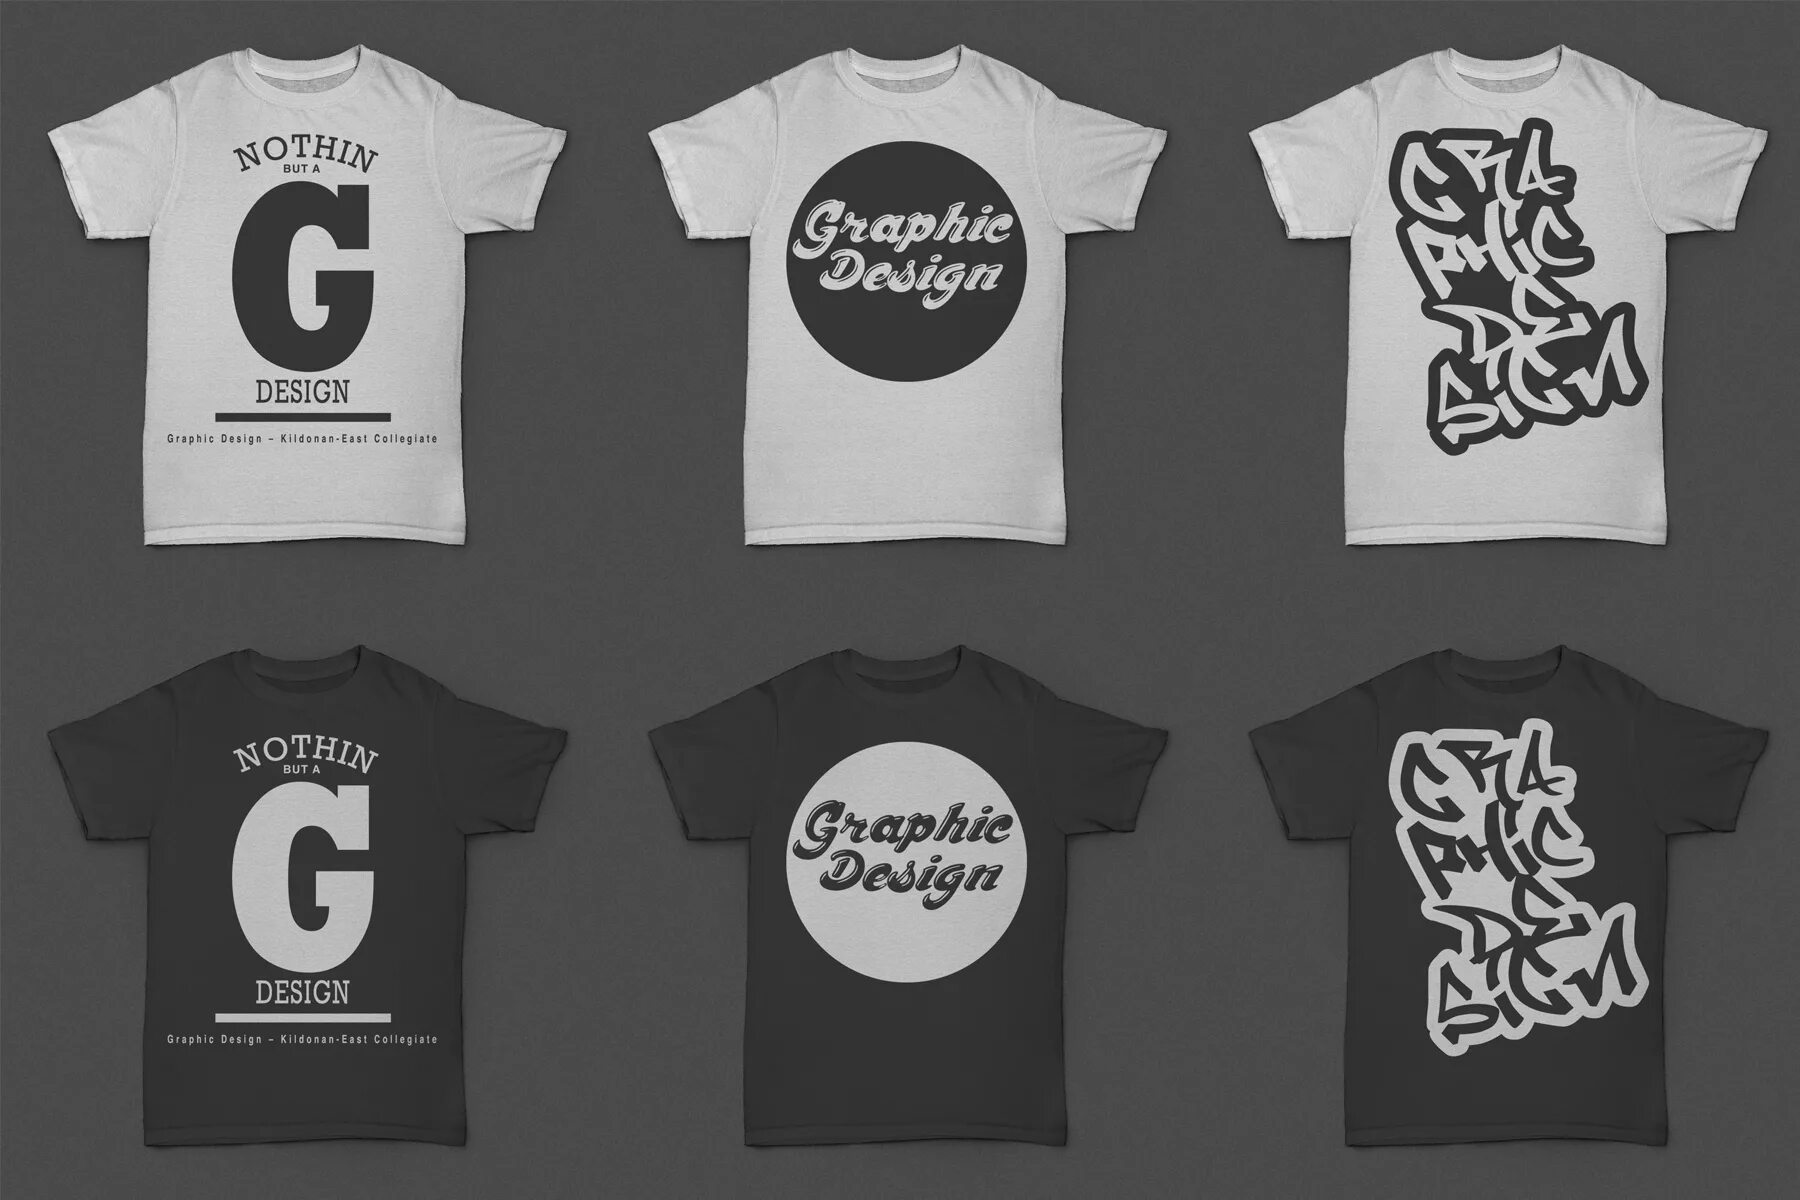 Футболка graphic. Типографика на футболке. Футболка для графического дизайнера. Футболка дизайн. Футболка графический дизайн.